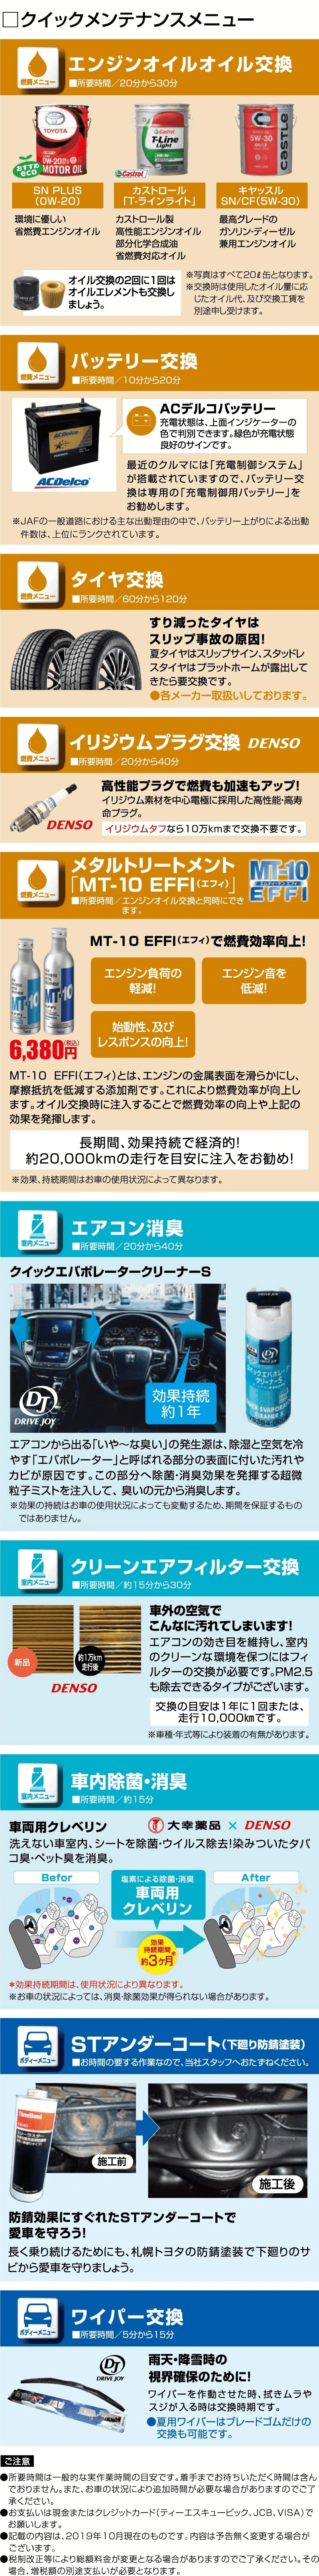 クイックメンテナンスメニュー カーメンテナンス 札幌トヨタ自動車